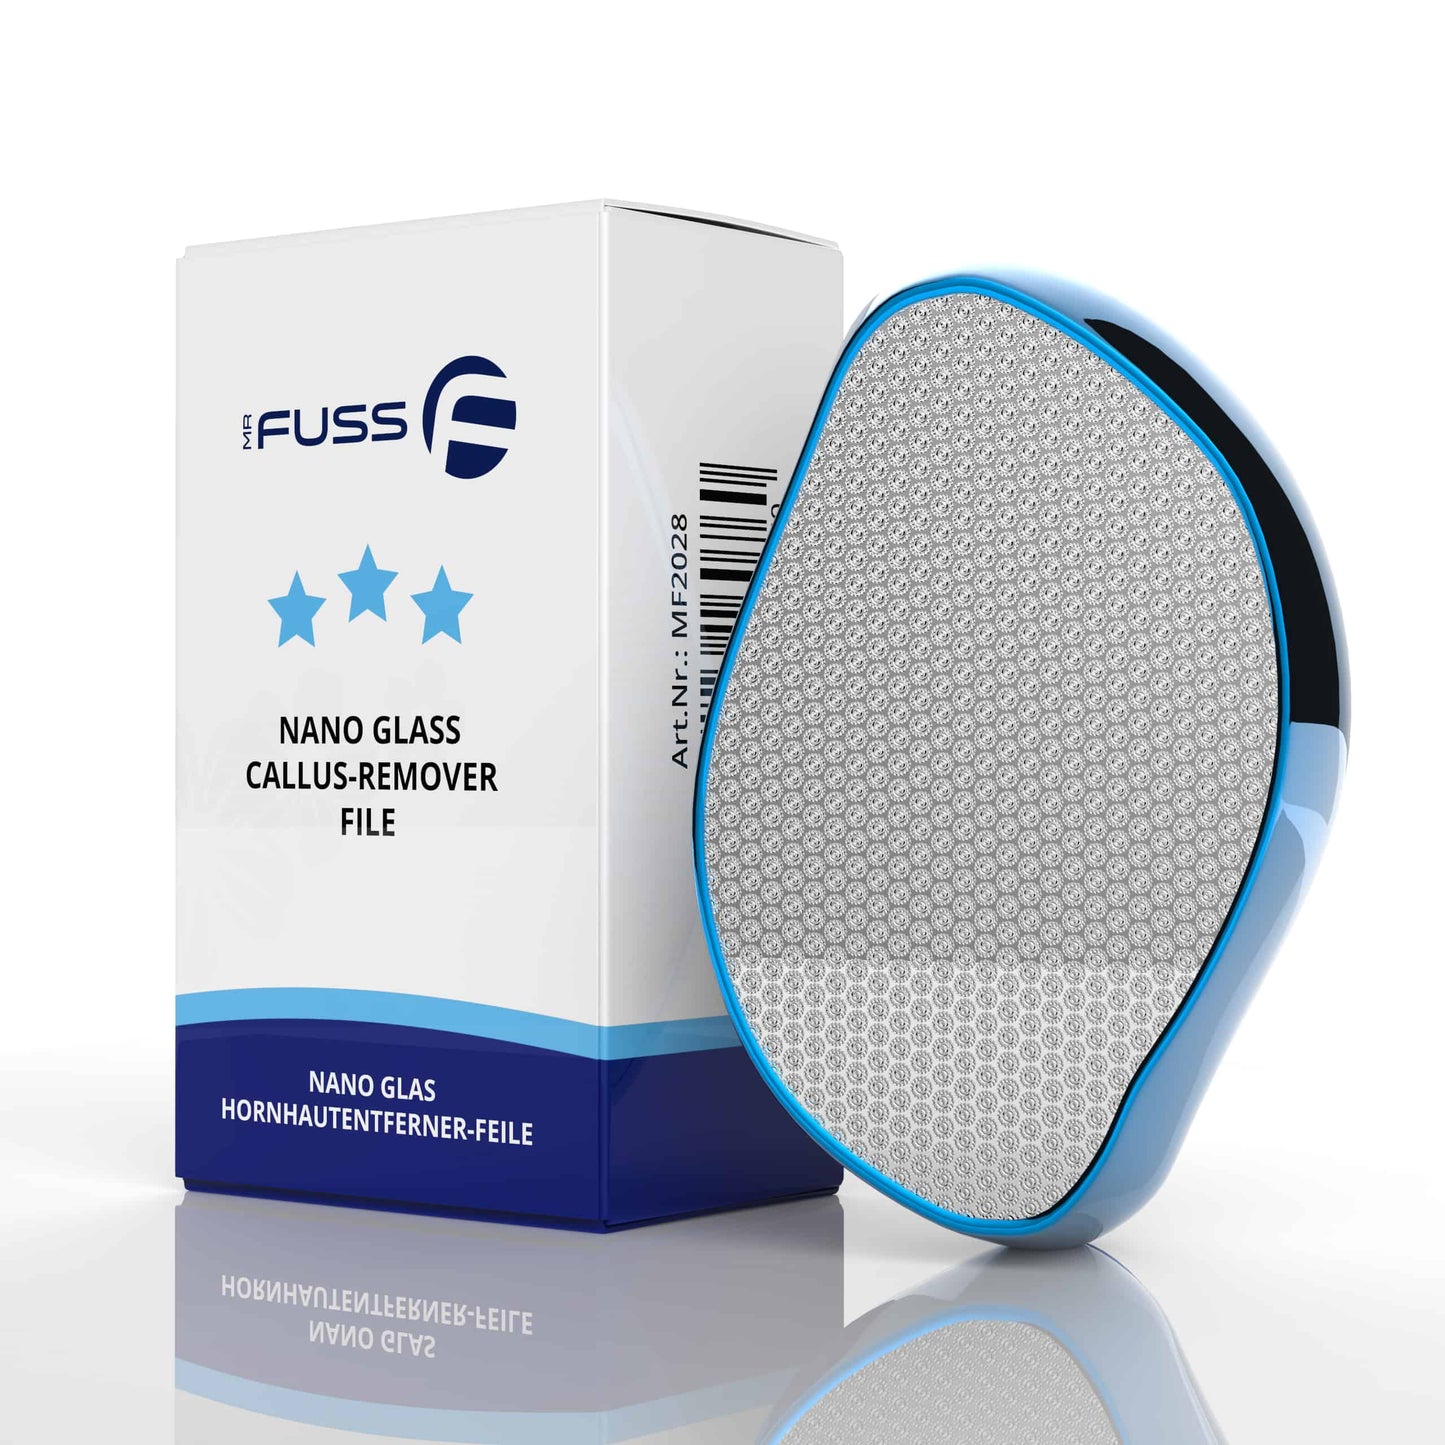 Mr. Fuss® - Nano Glas - 2 in 1 Lima per la rimozione del callo